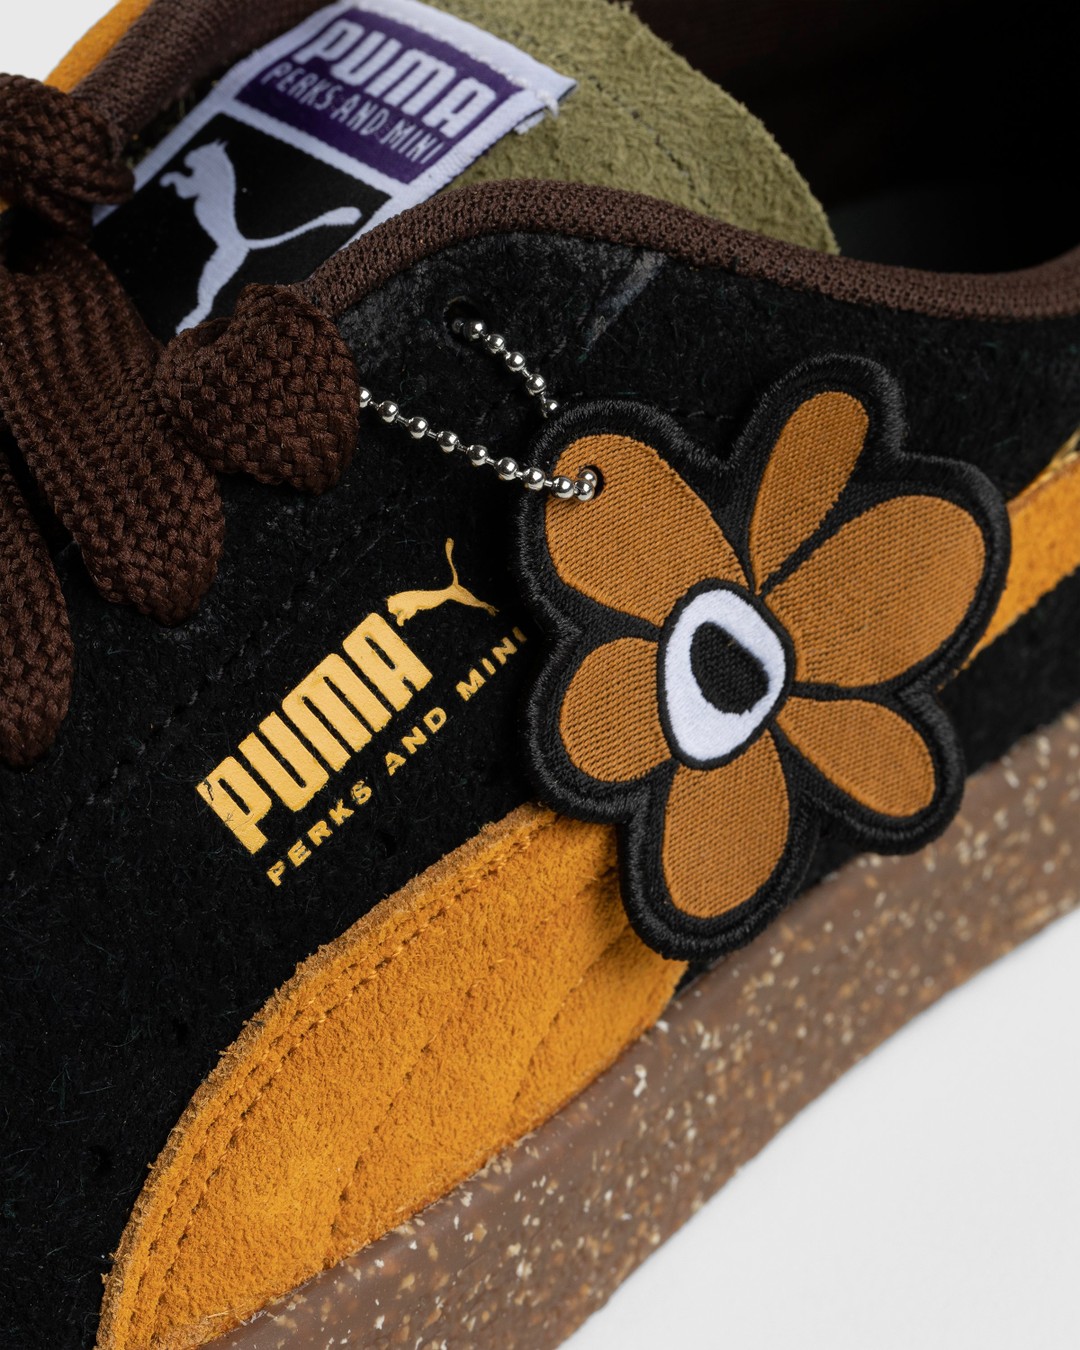 Puma x P.A.M. – Suede Vintage Brown - Low Top Sneakers - Brown - Image 6